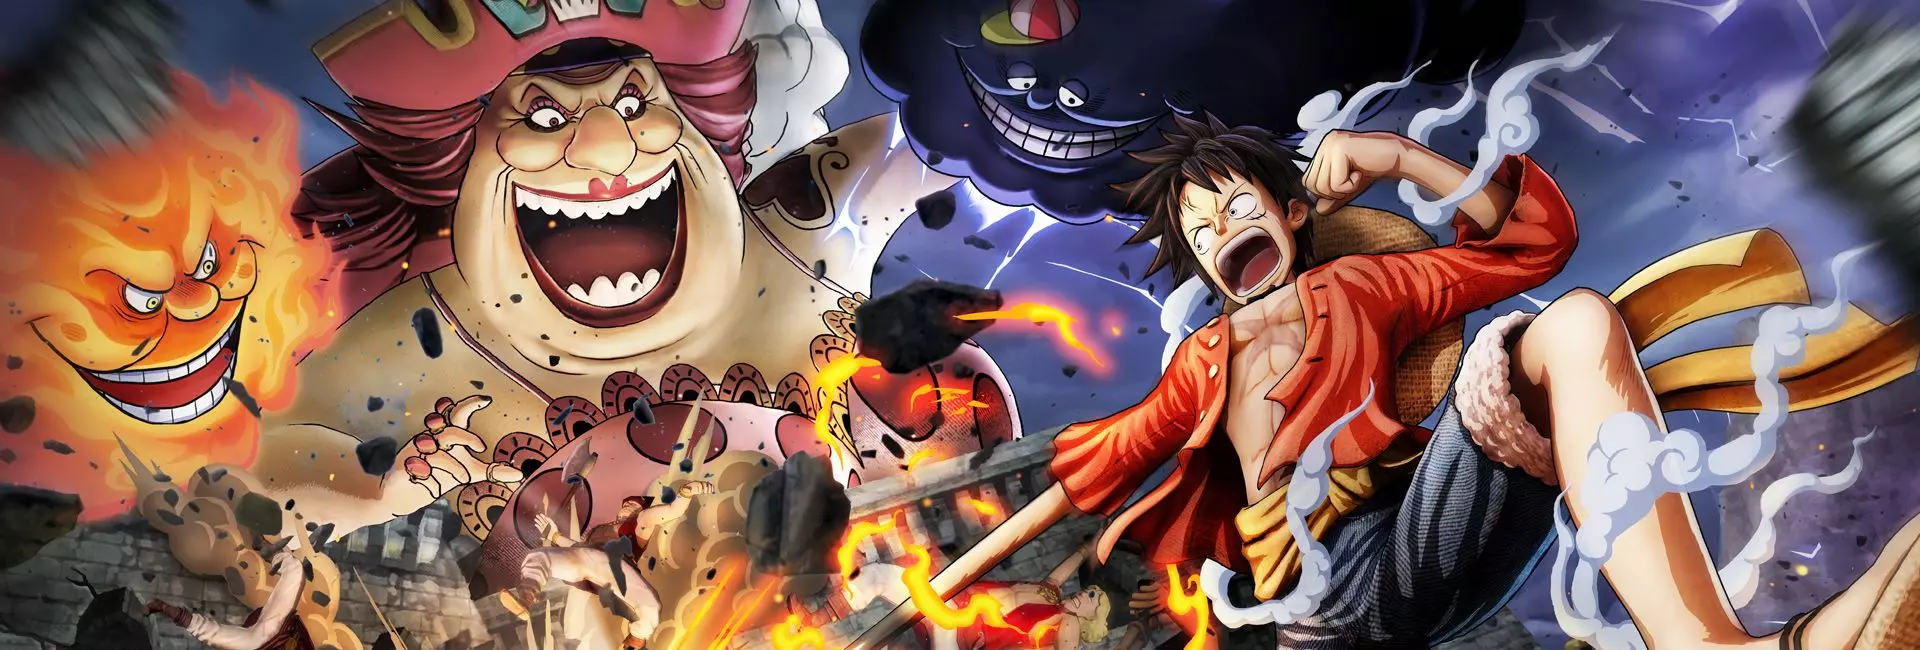 Пиратская тематическая экшн-игра One Piece: Pirate Warriors 4 показала еще один трейлер от издательства Bandai Namco, на этот раз демонстрирующий специальные движения каждого персонажа.